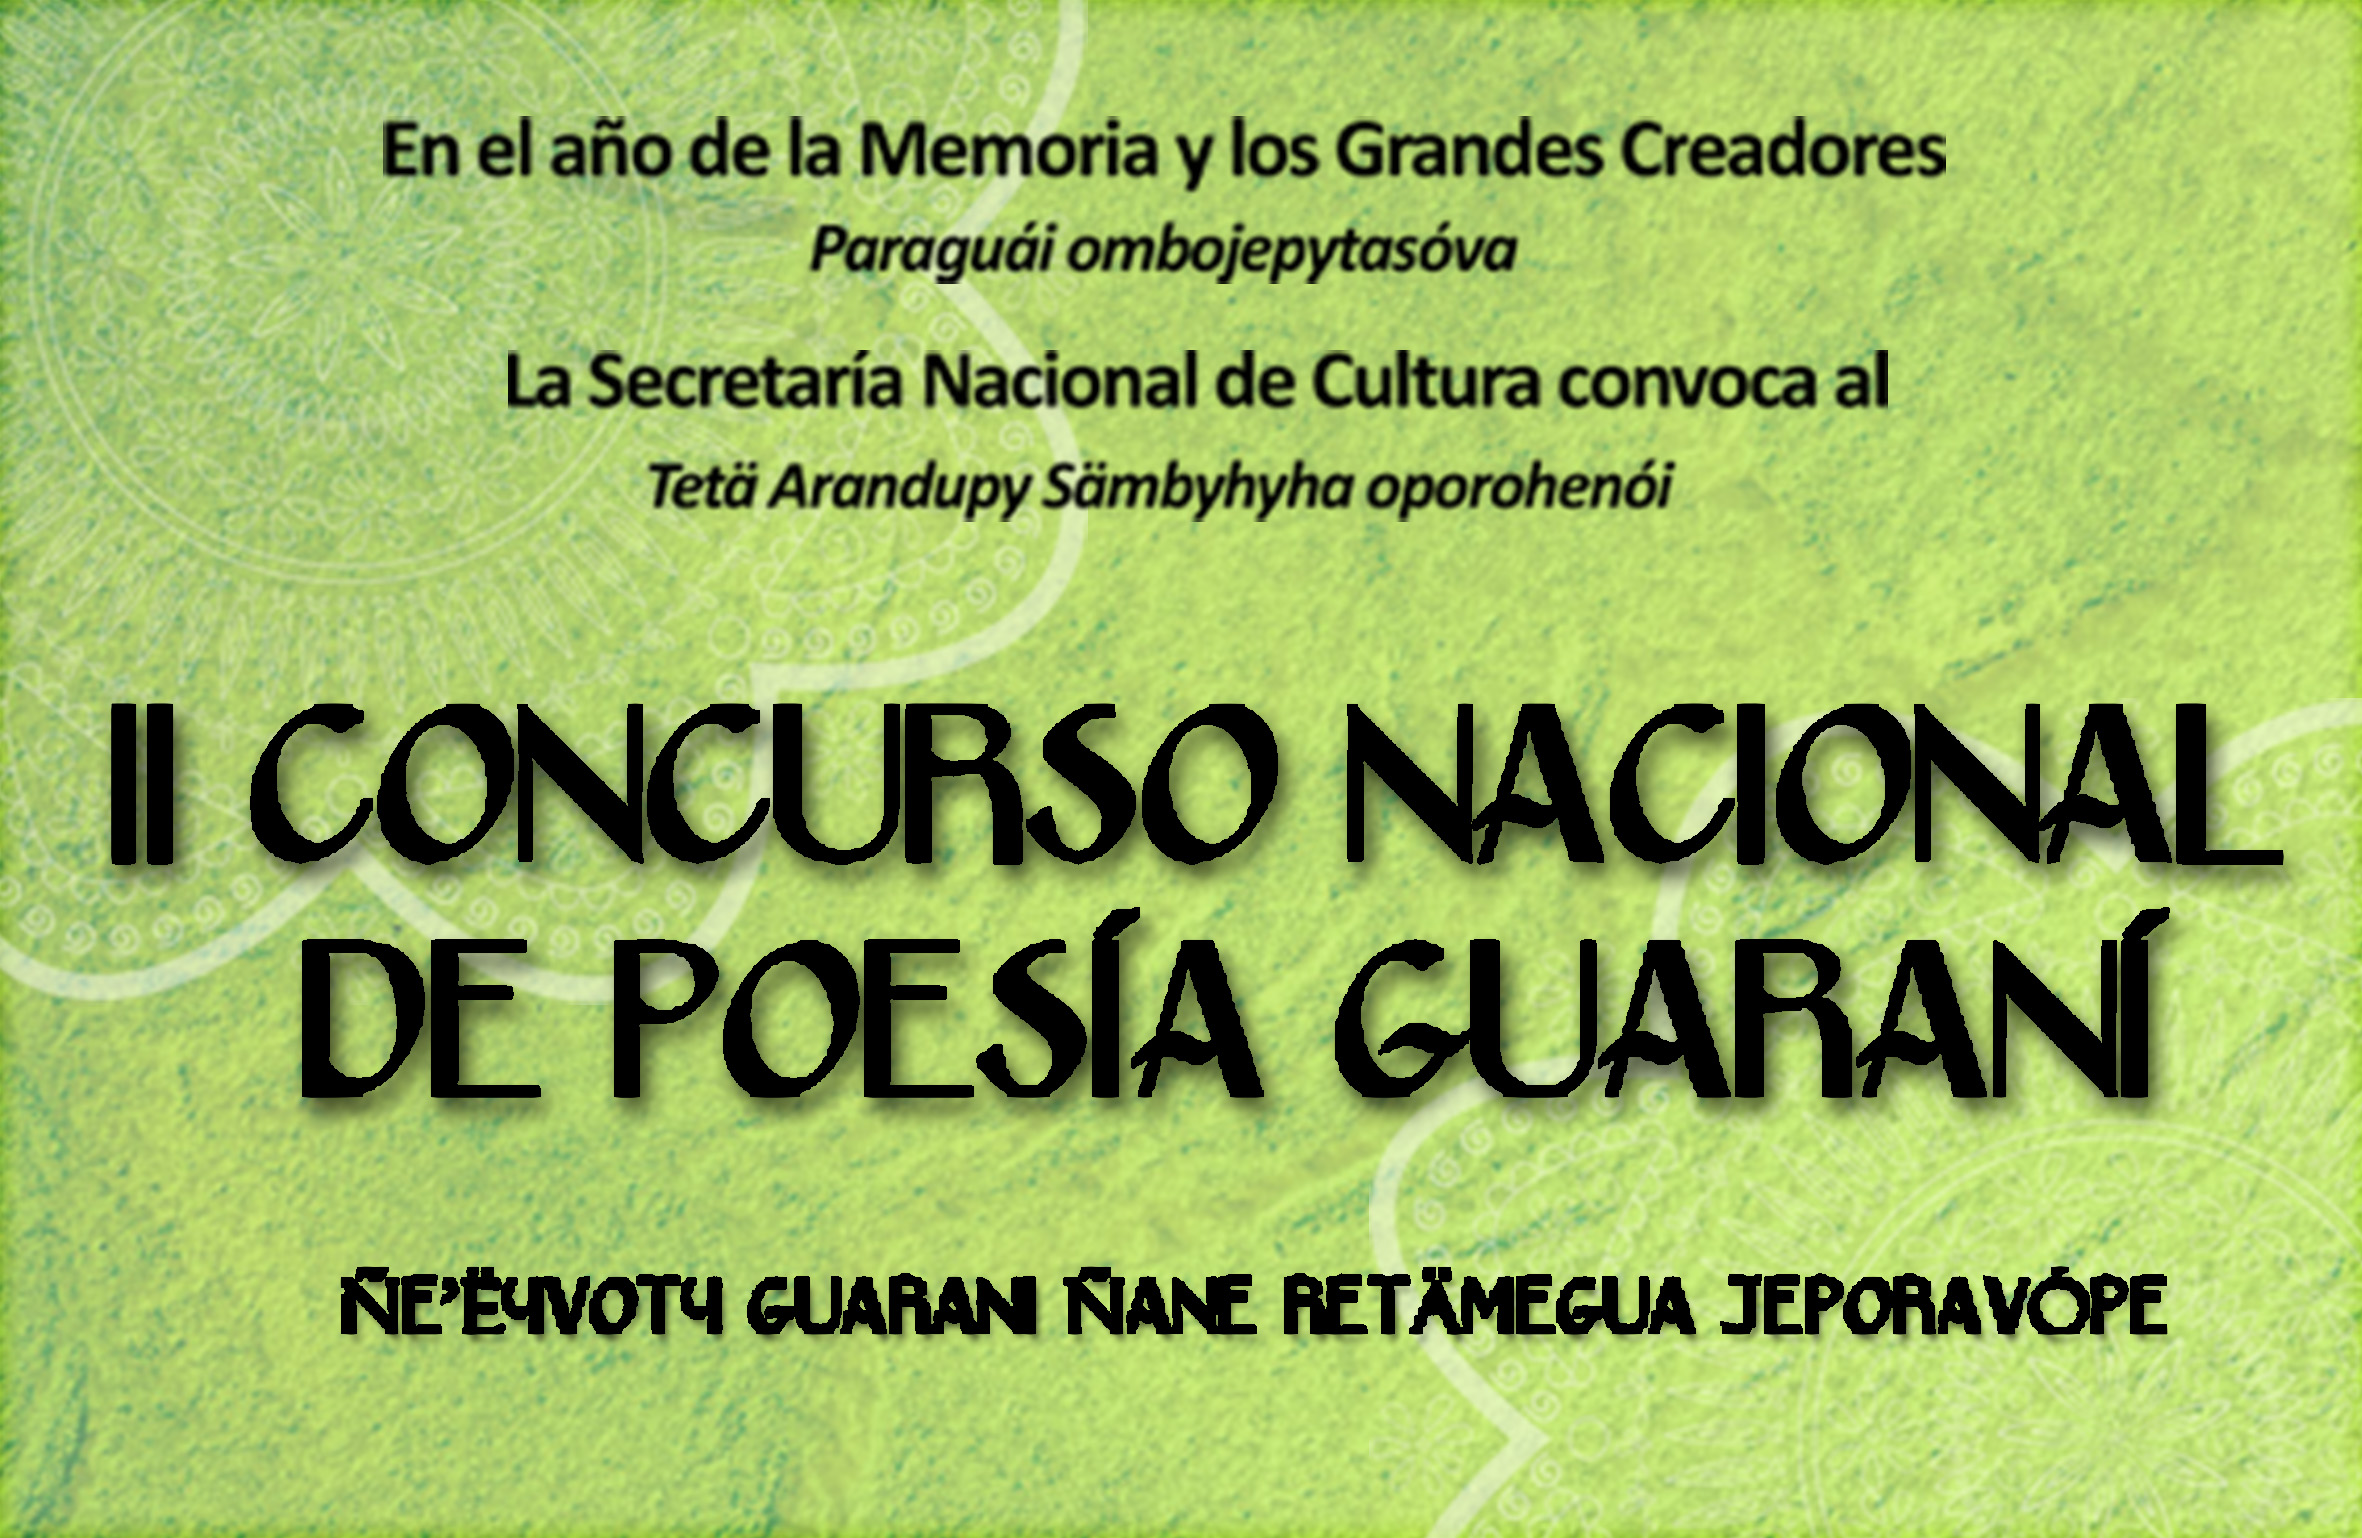 El martes 22 de julio vence la convocatoria para el II Concurso Nacional de Poesía Guaraní imagen